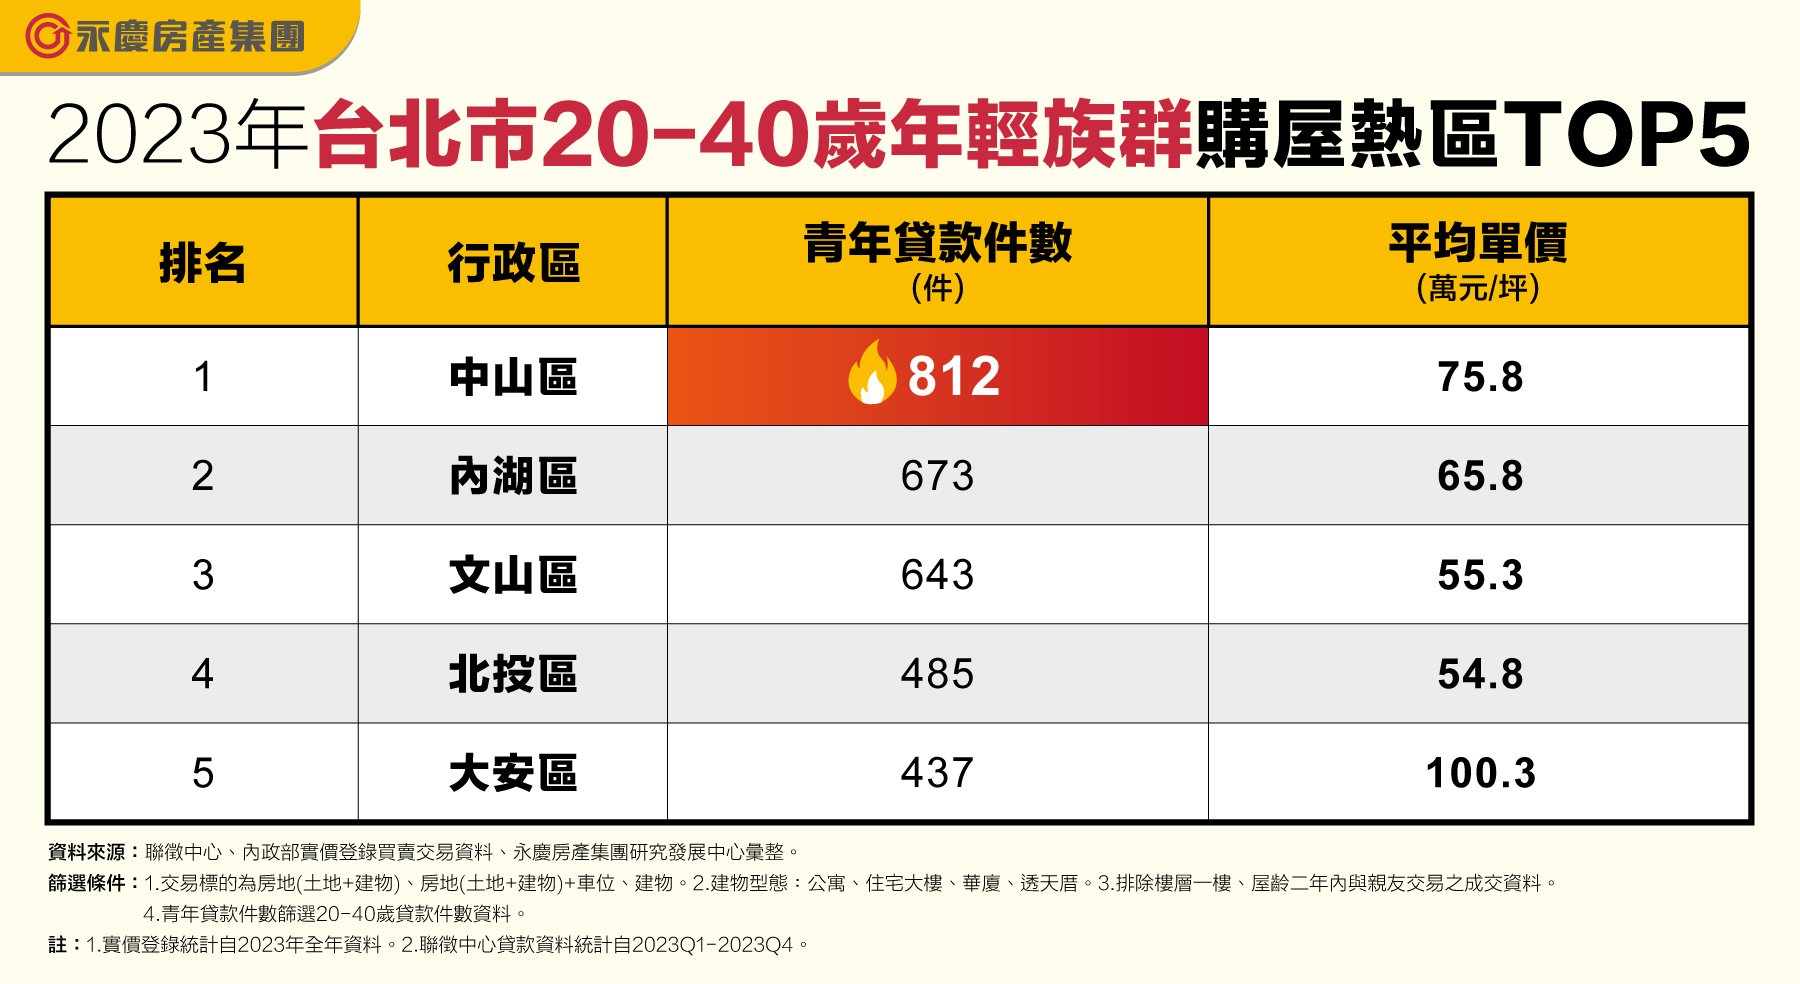 2023年台北市20-40岁年轻族群购屋热区TOP5  资料来源／永庆房屋